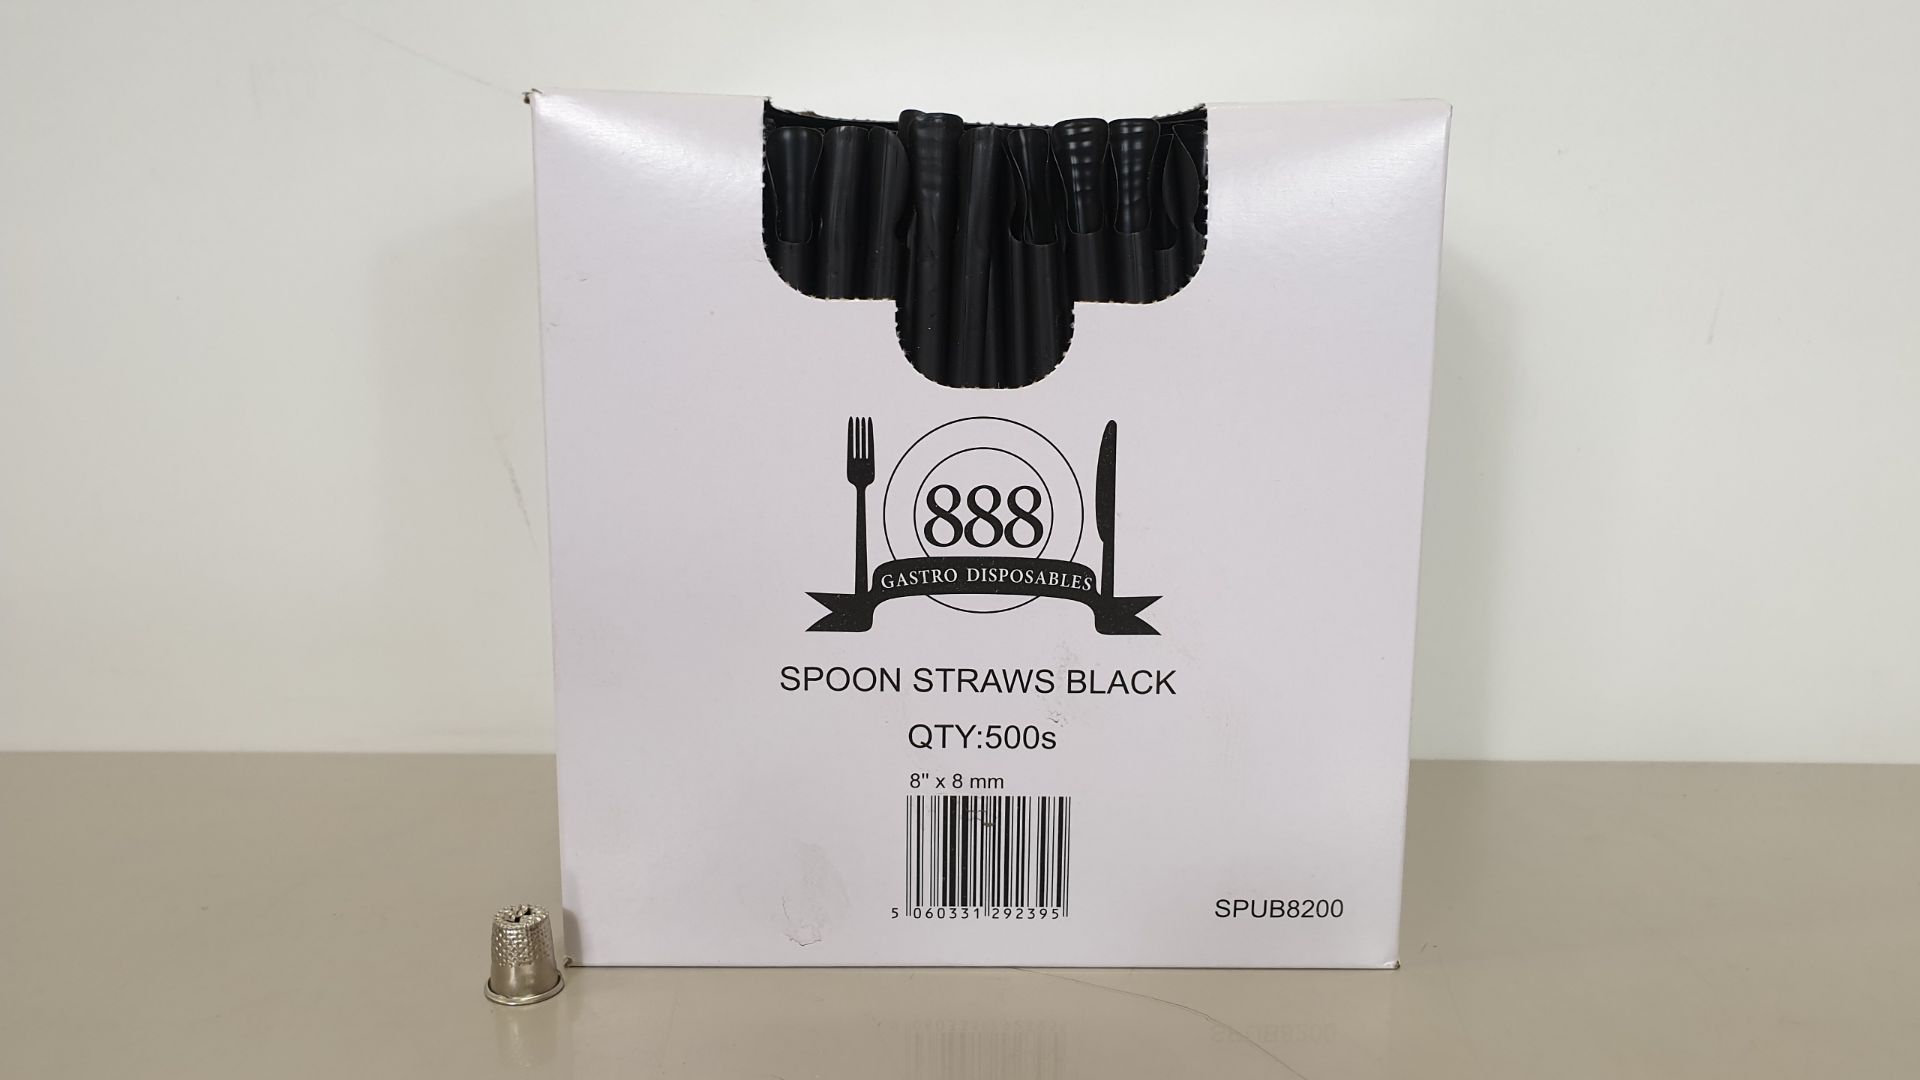 10,000 X SPOON STRAWS BLACK (20 X 500) - IN 1 CARTON